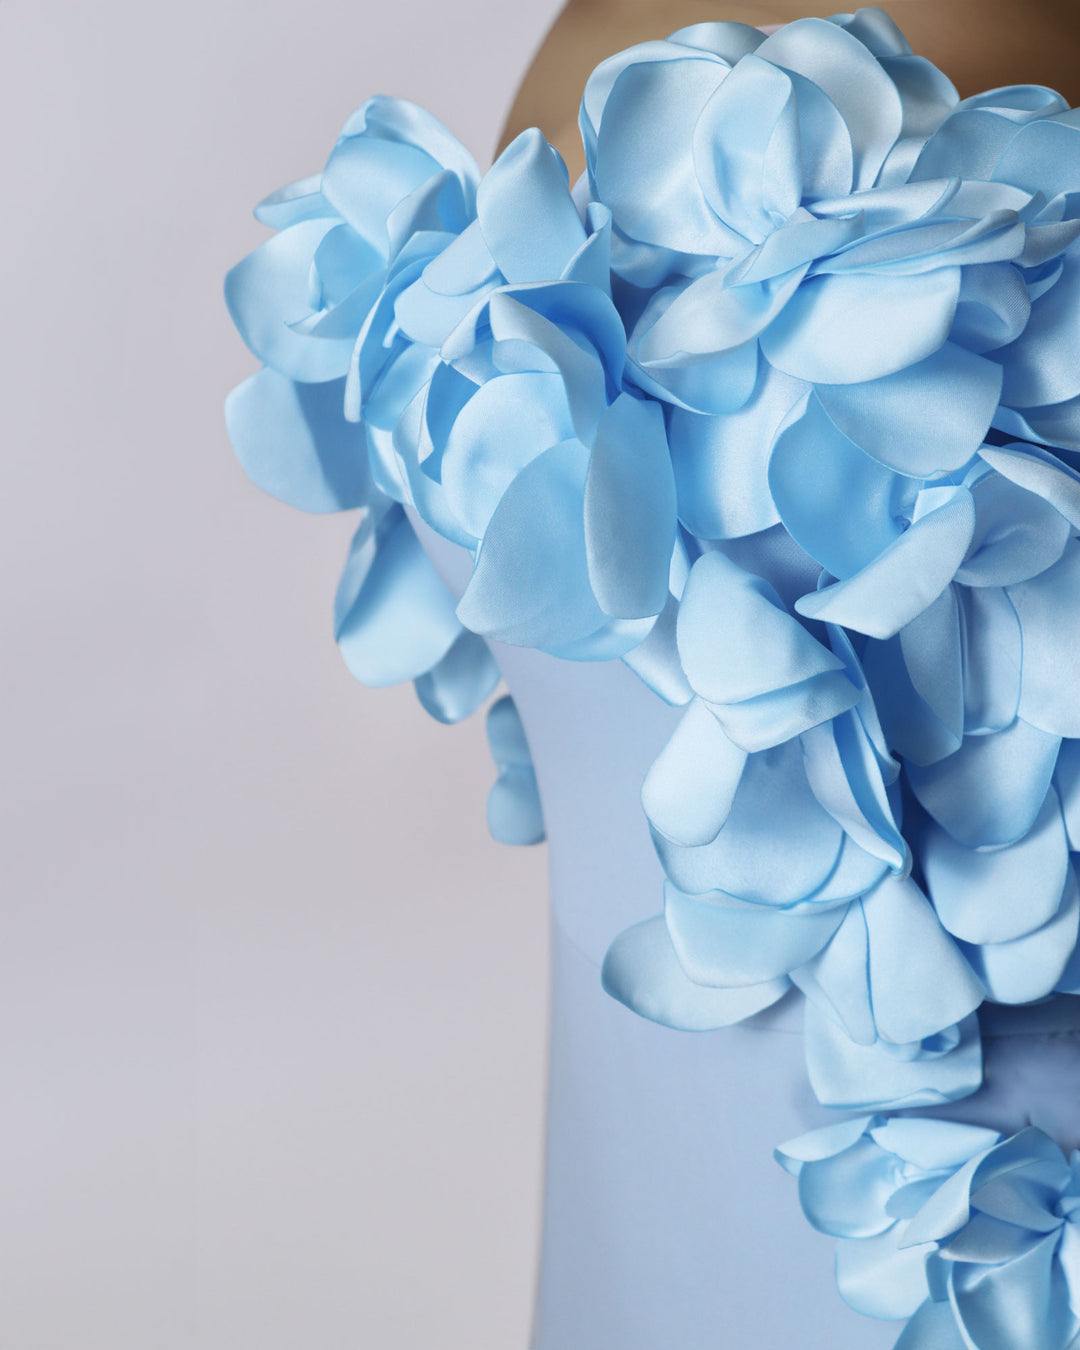 Strapless sky blue dress with 3d flowers -Zhavia